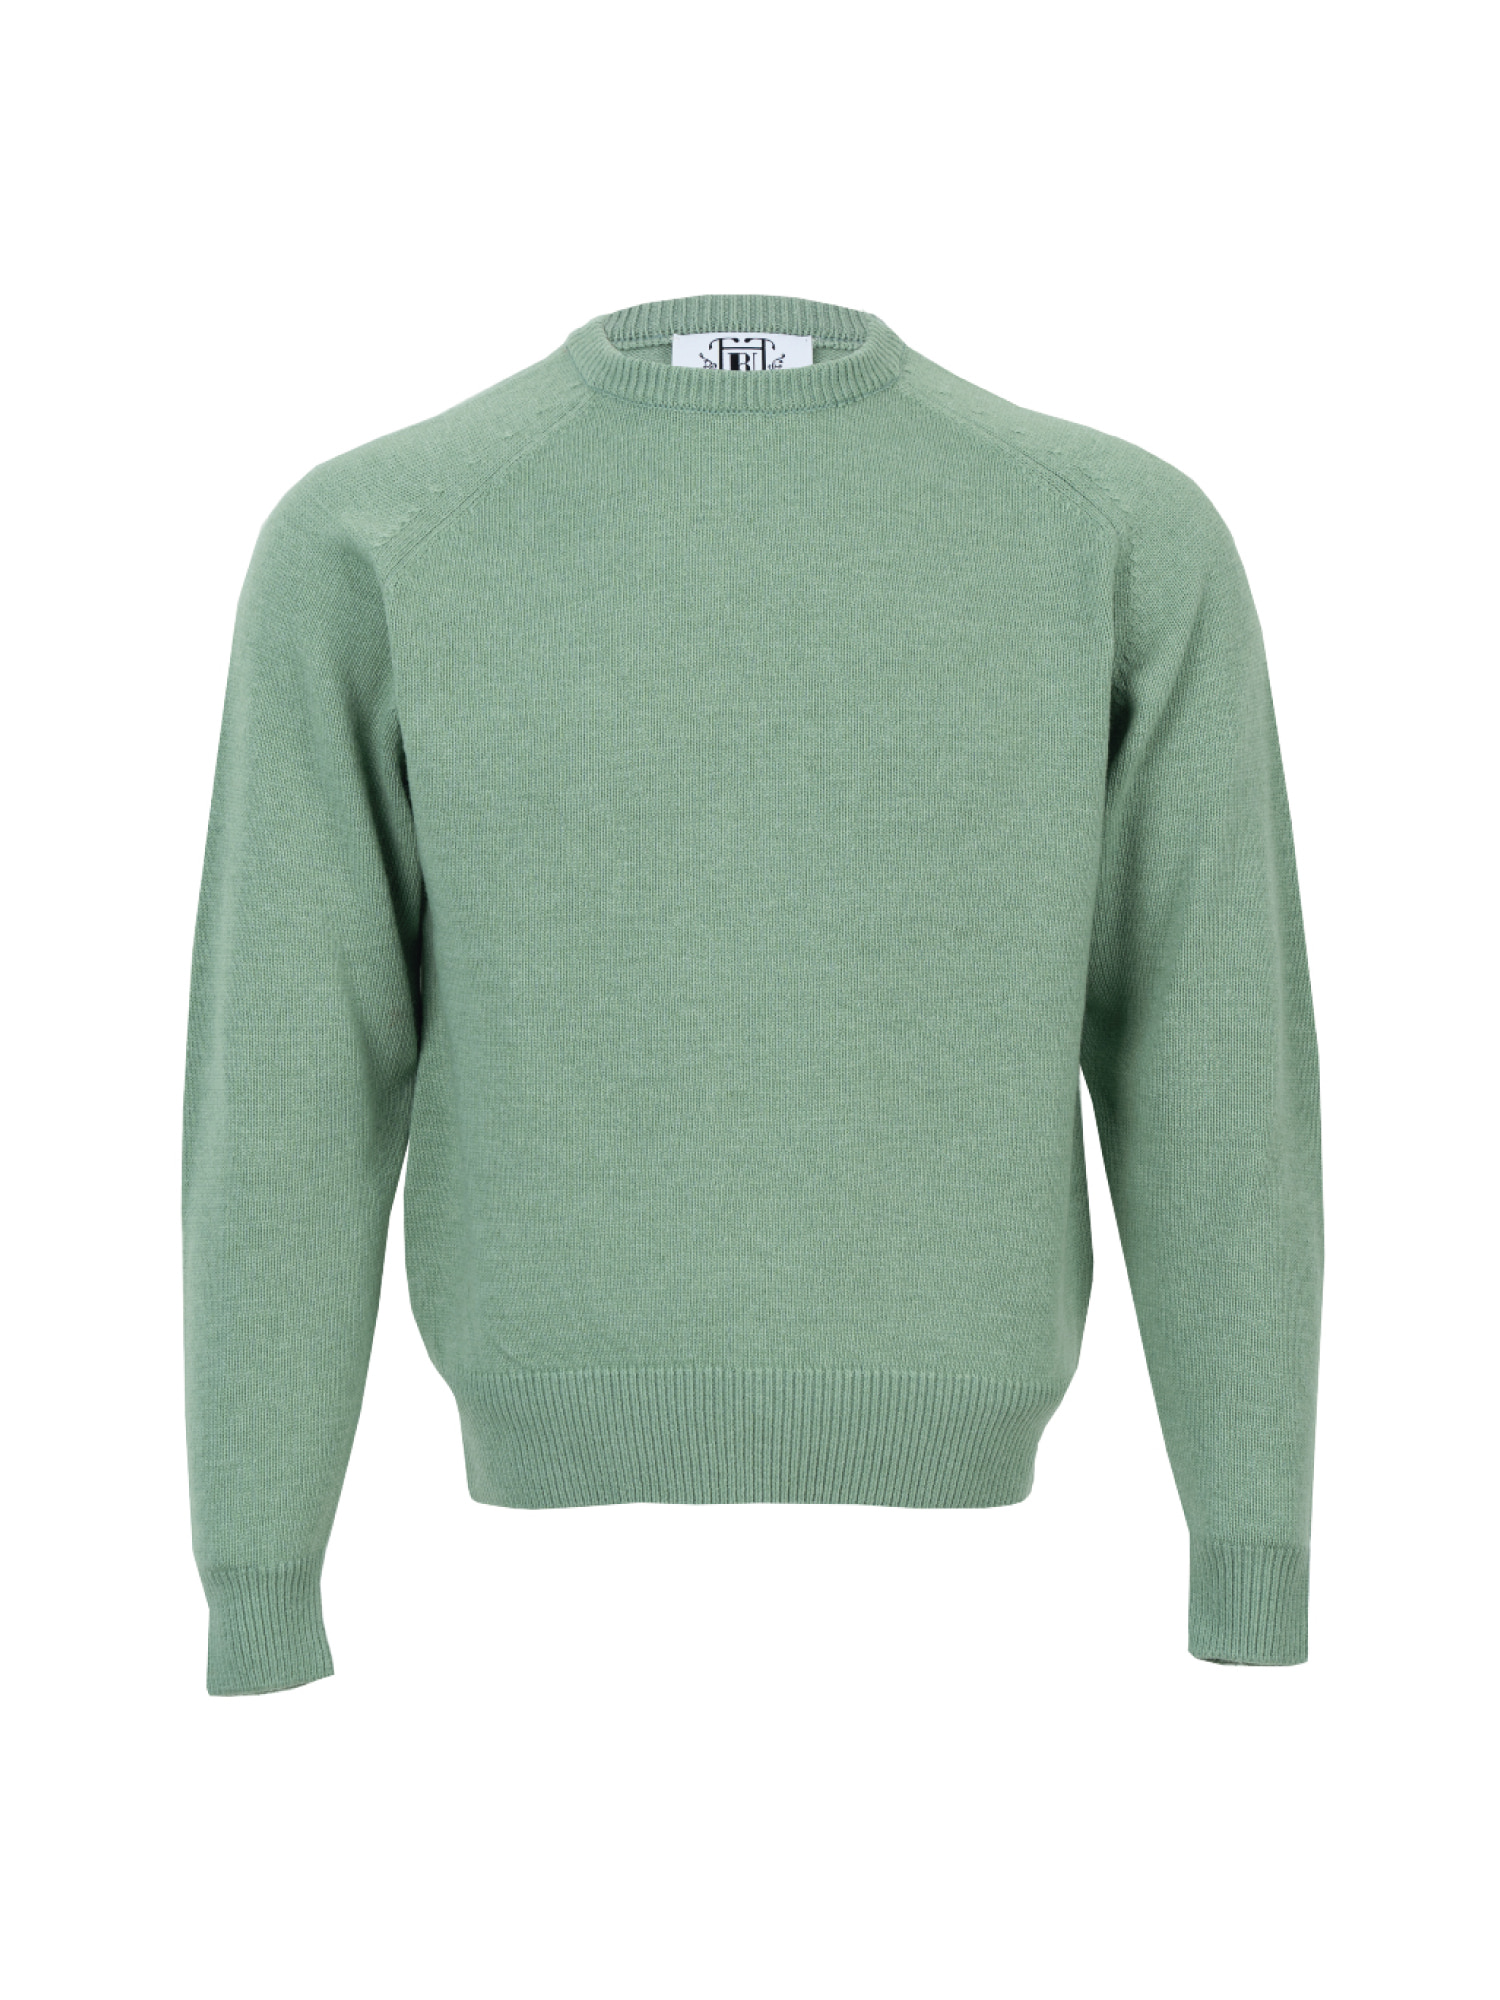 Raglan Sleeves Crewneck Knitwear - Green